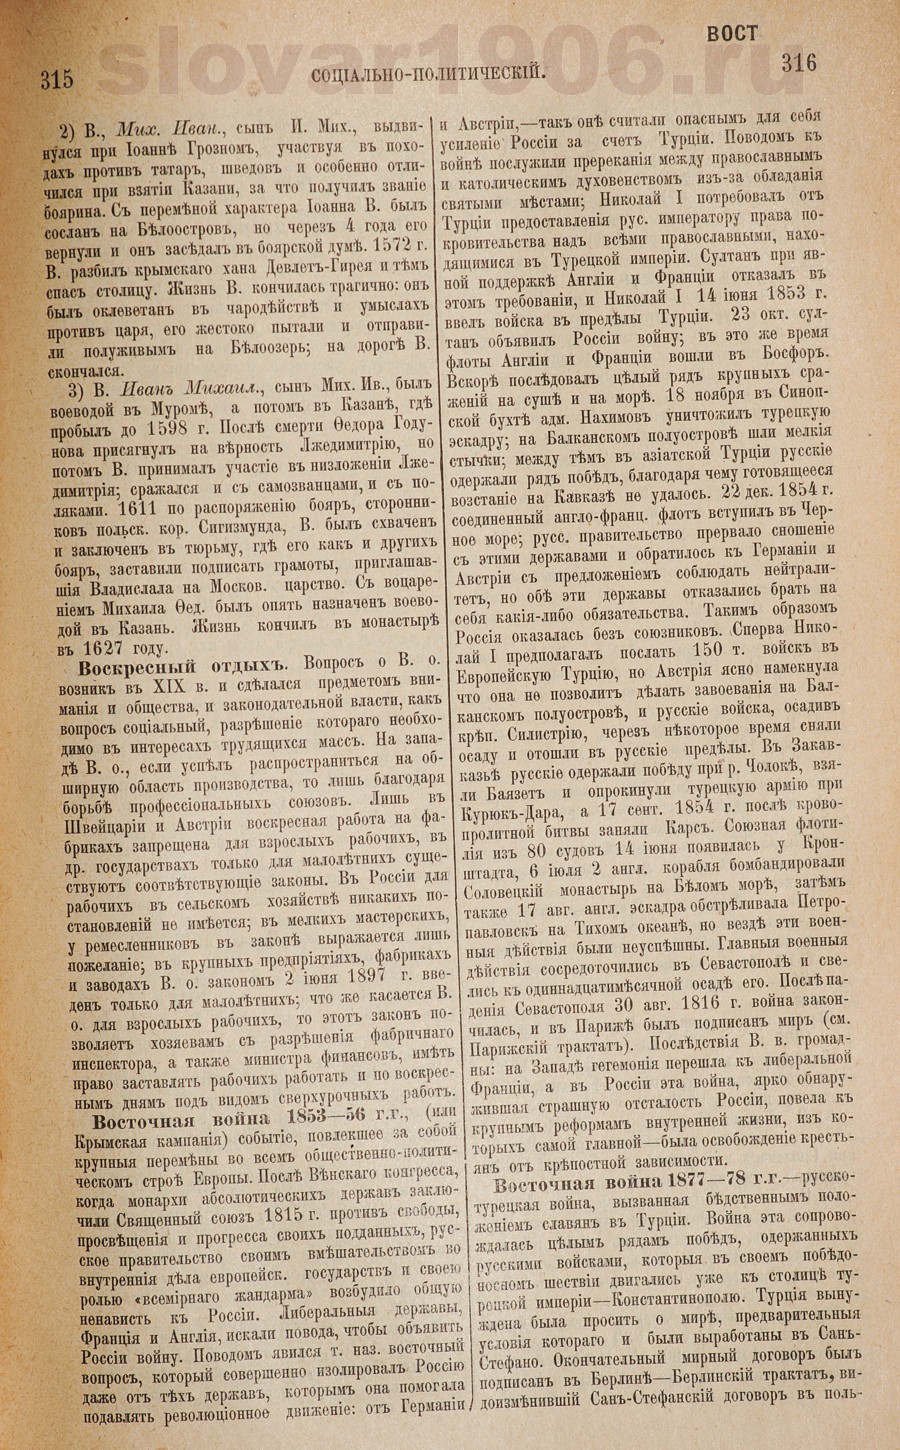 Словарь исторический и социально-политический - Воскресный отдых
 - Восточная война 1877-1878